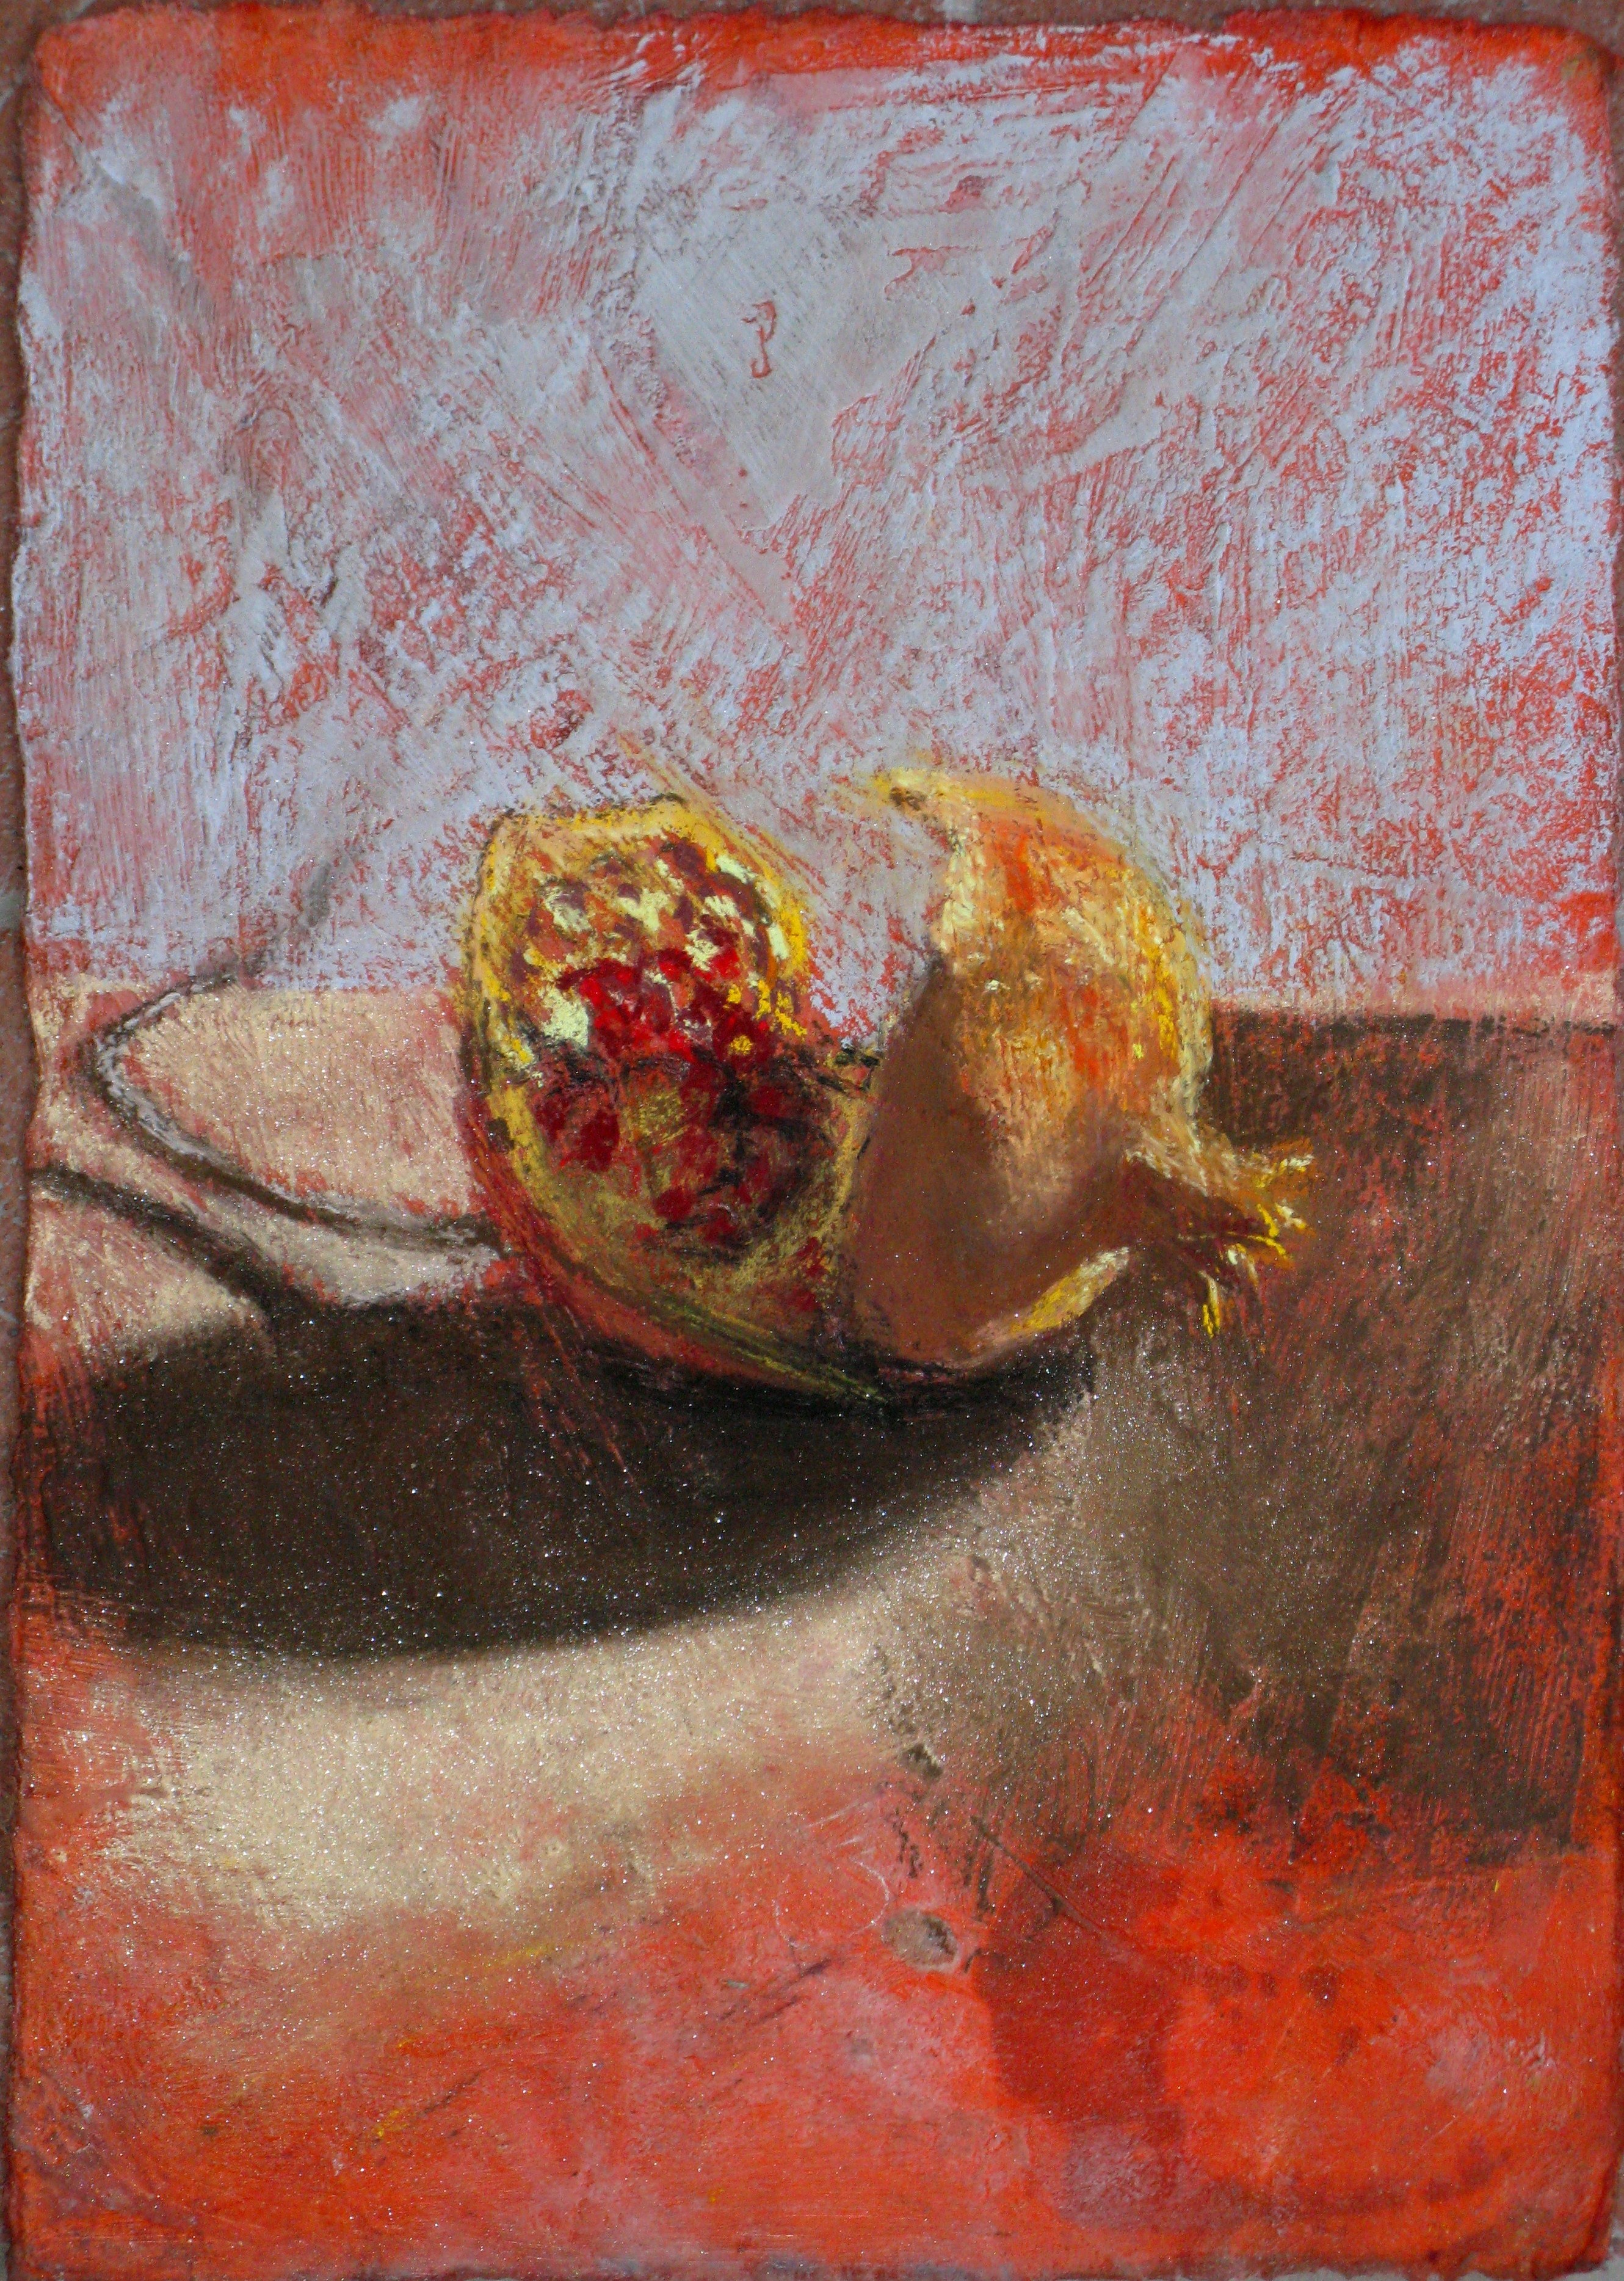 B 19) Melograno di dicembre, 2011, pastello su carta preparata a cera, 28,5x20